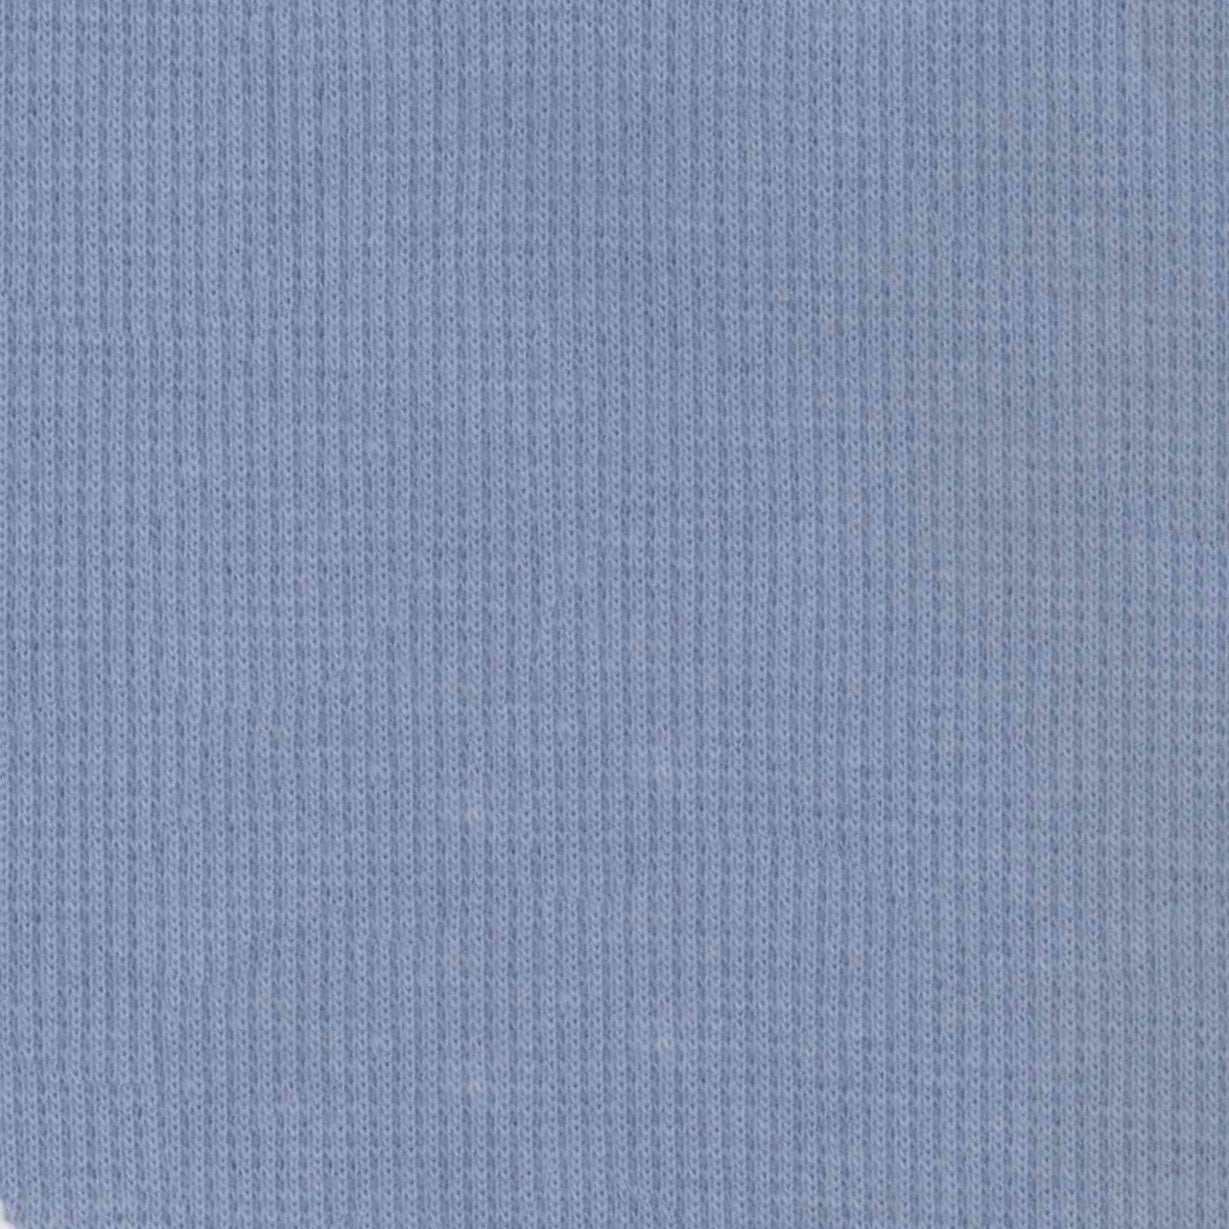 95% Organic Cotton, 5% Elastane 2x1 Rib Knit - Blue (2RB118)